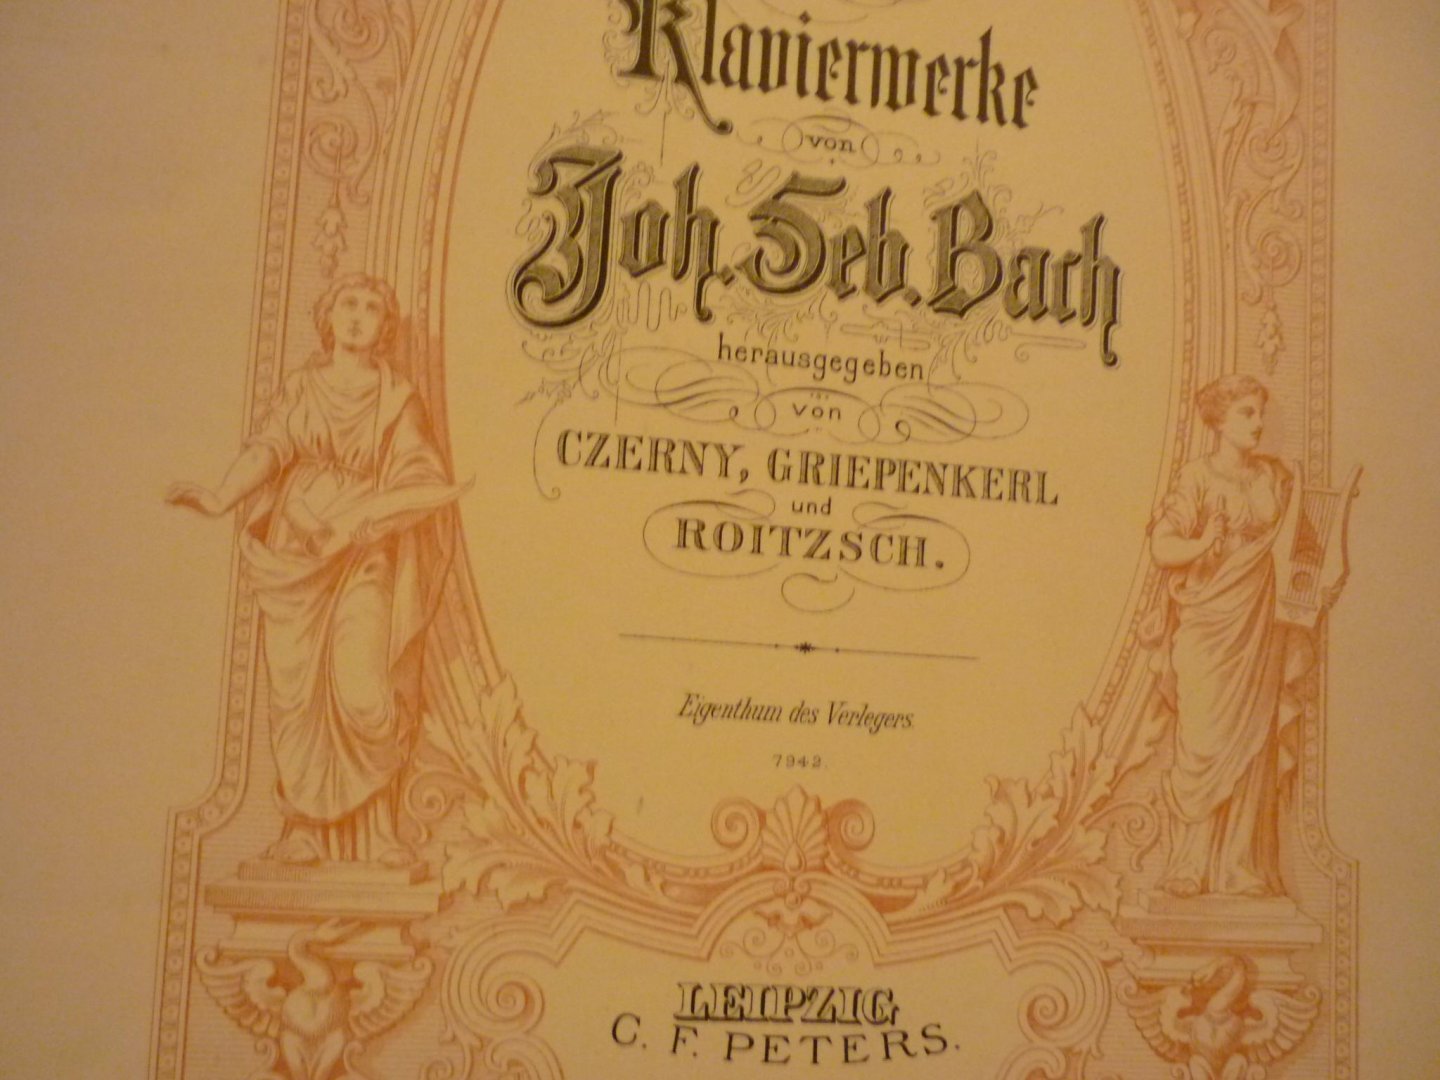 Bach; J. S. (1685-1750) - Drie Sonaten (Serie Klavierwerke; herausgegeben von Czerny; Griepenkerl und Roitzsch)